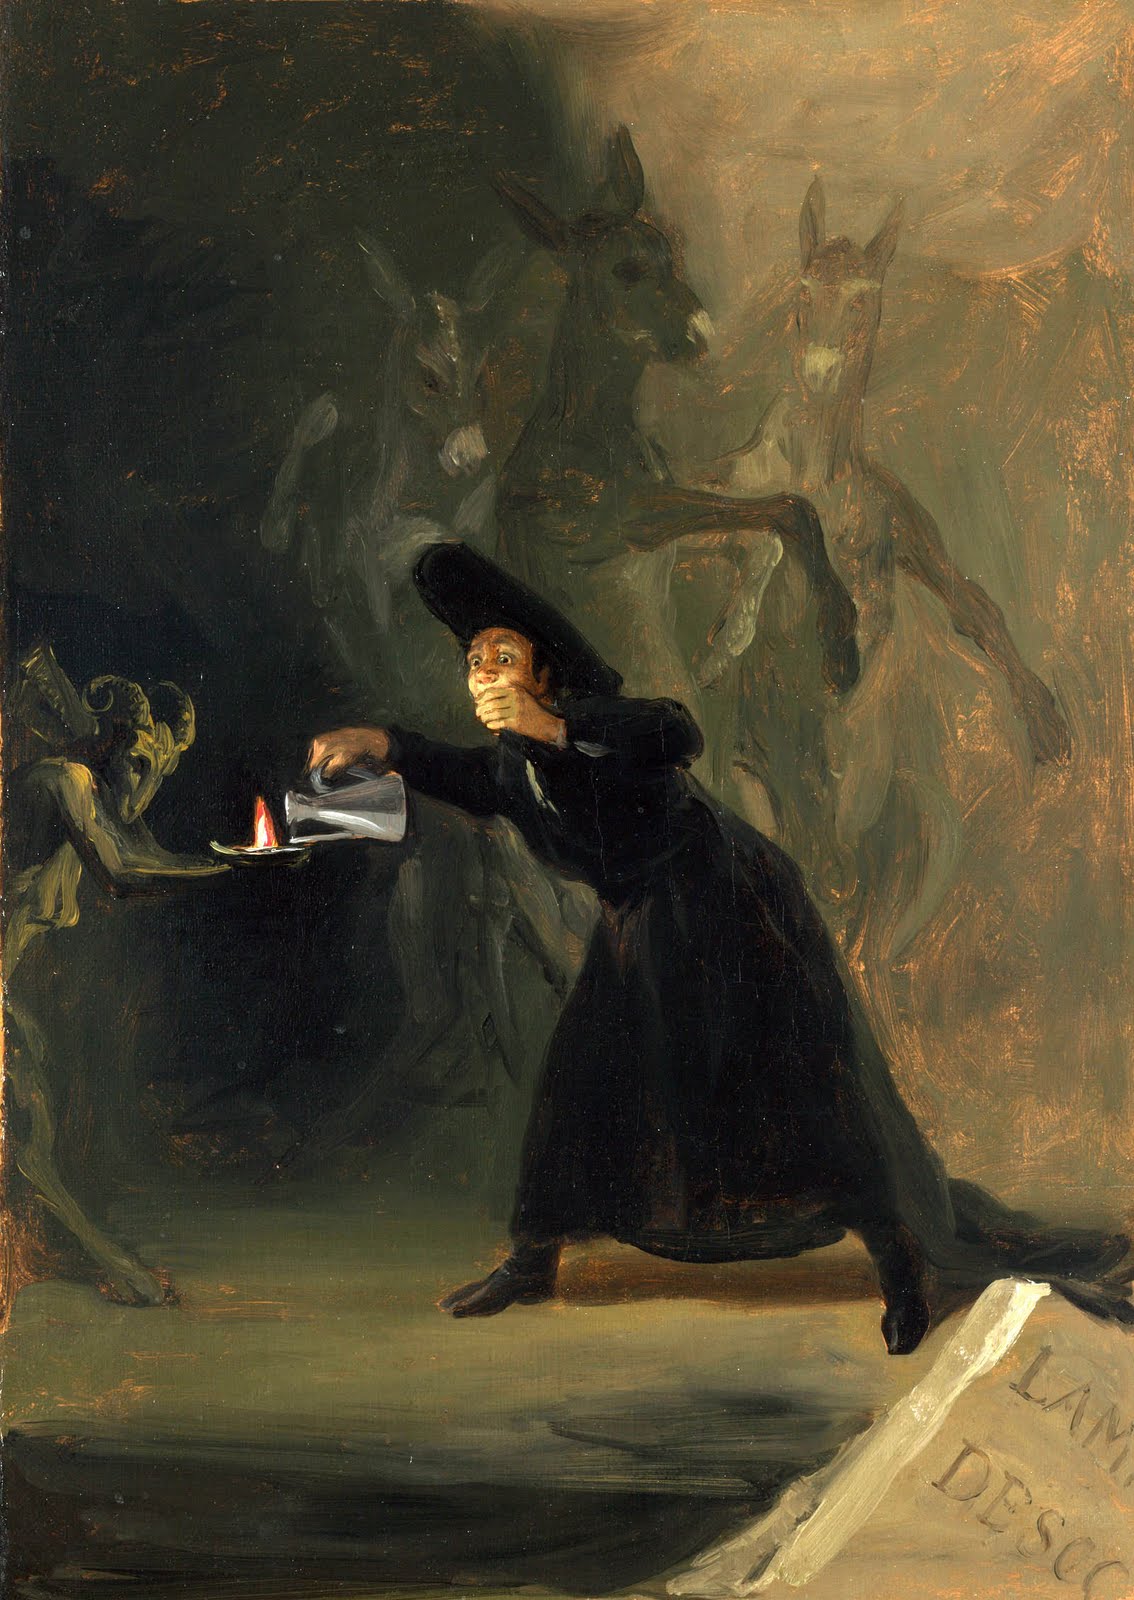 Detalle de “Hechizado por fuerza”, pintado por Goya